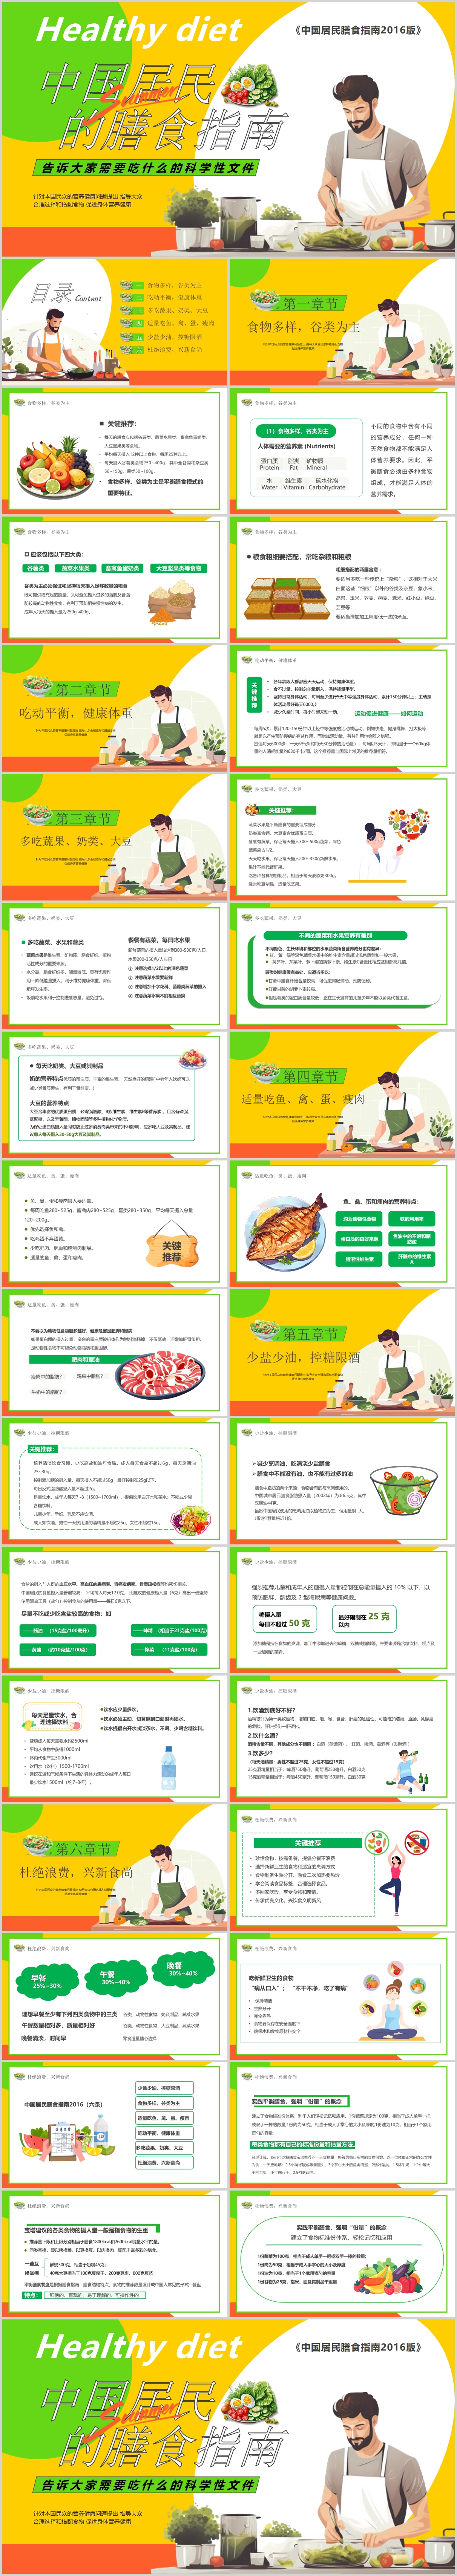 中国居民膳食指南插图